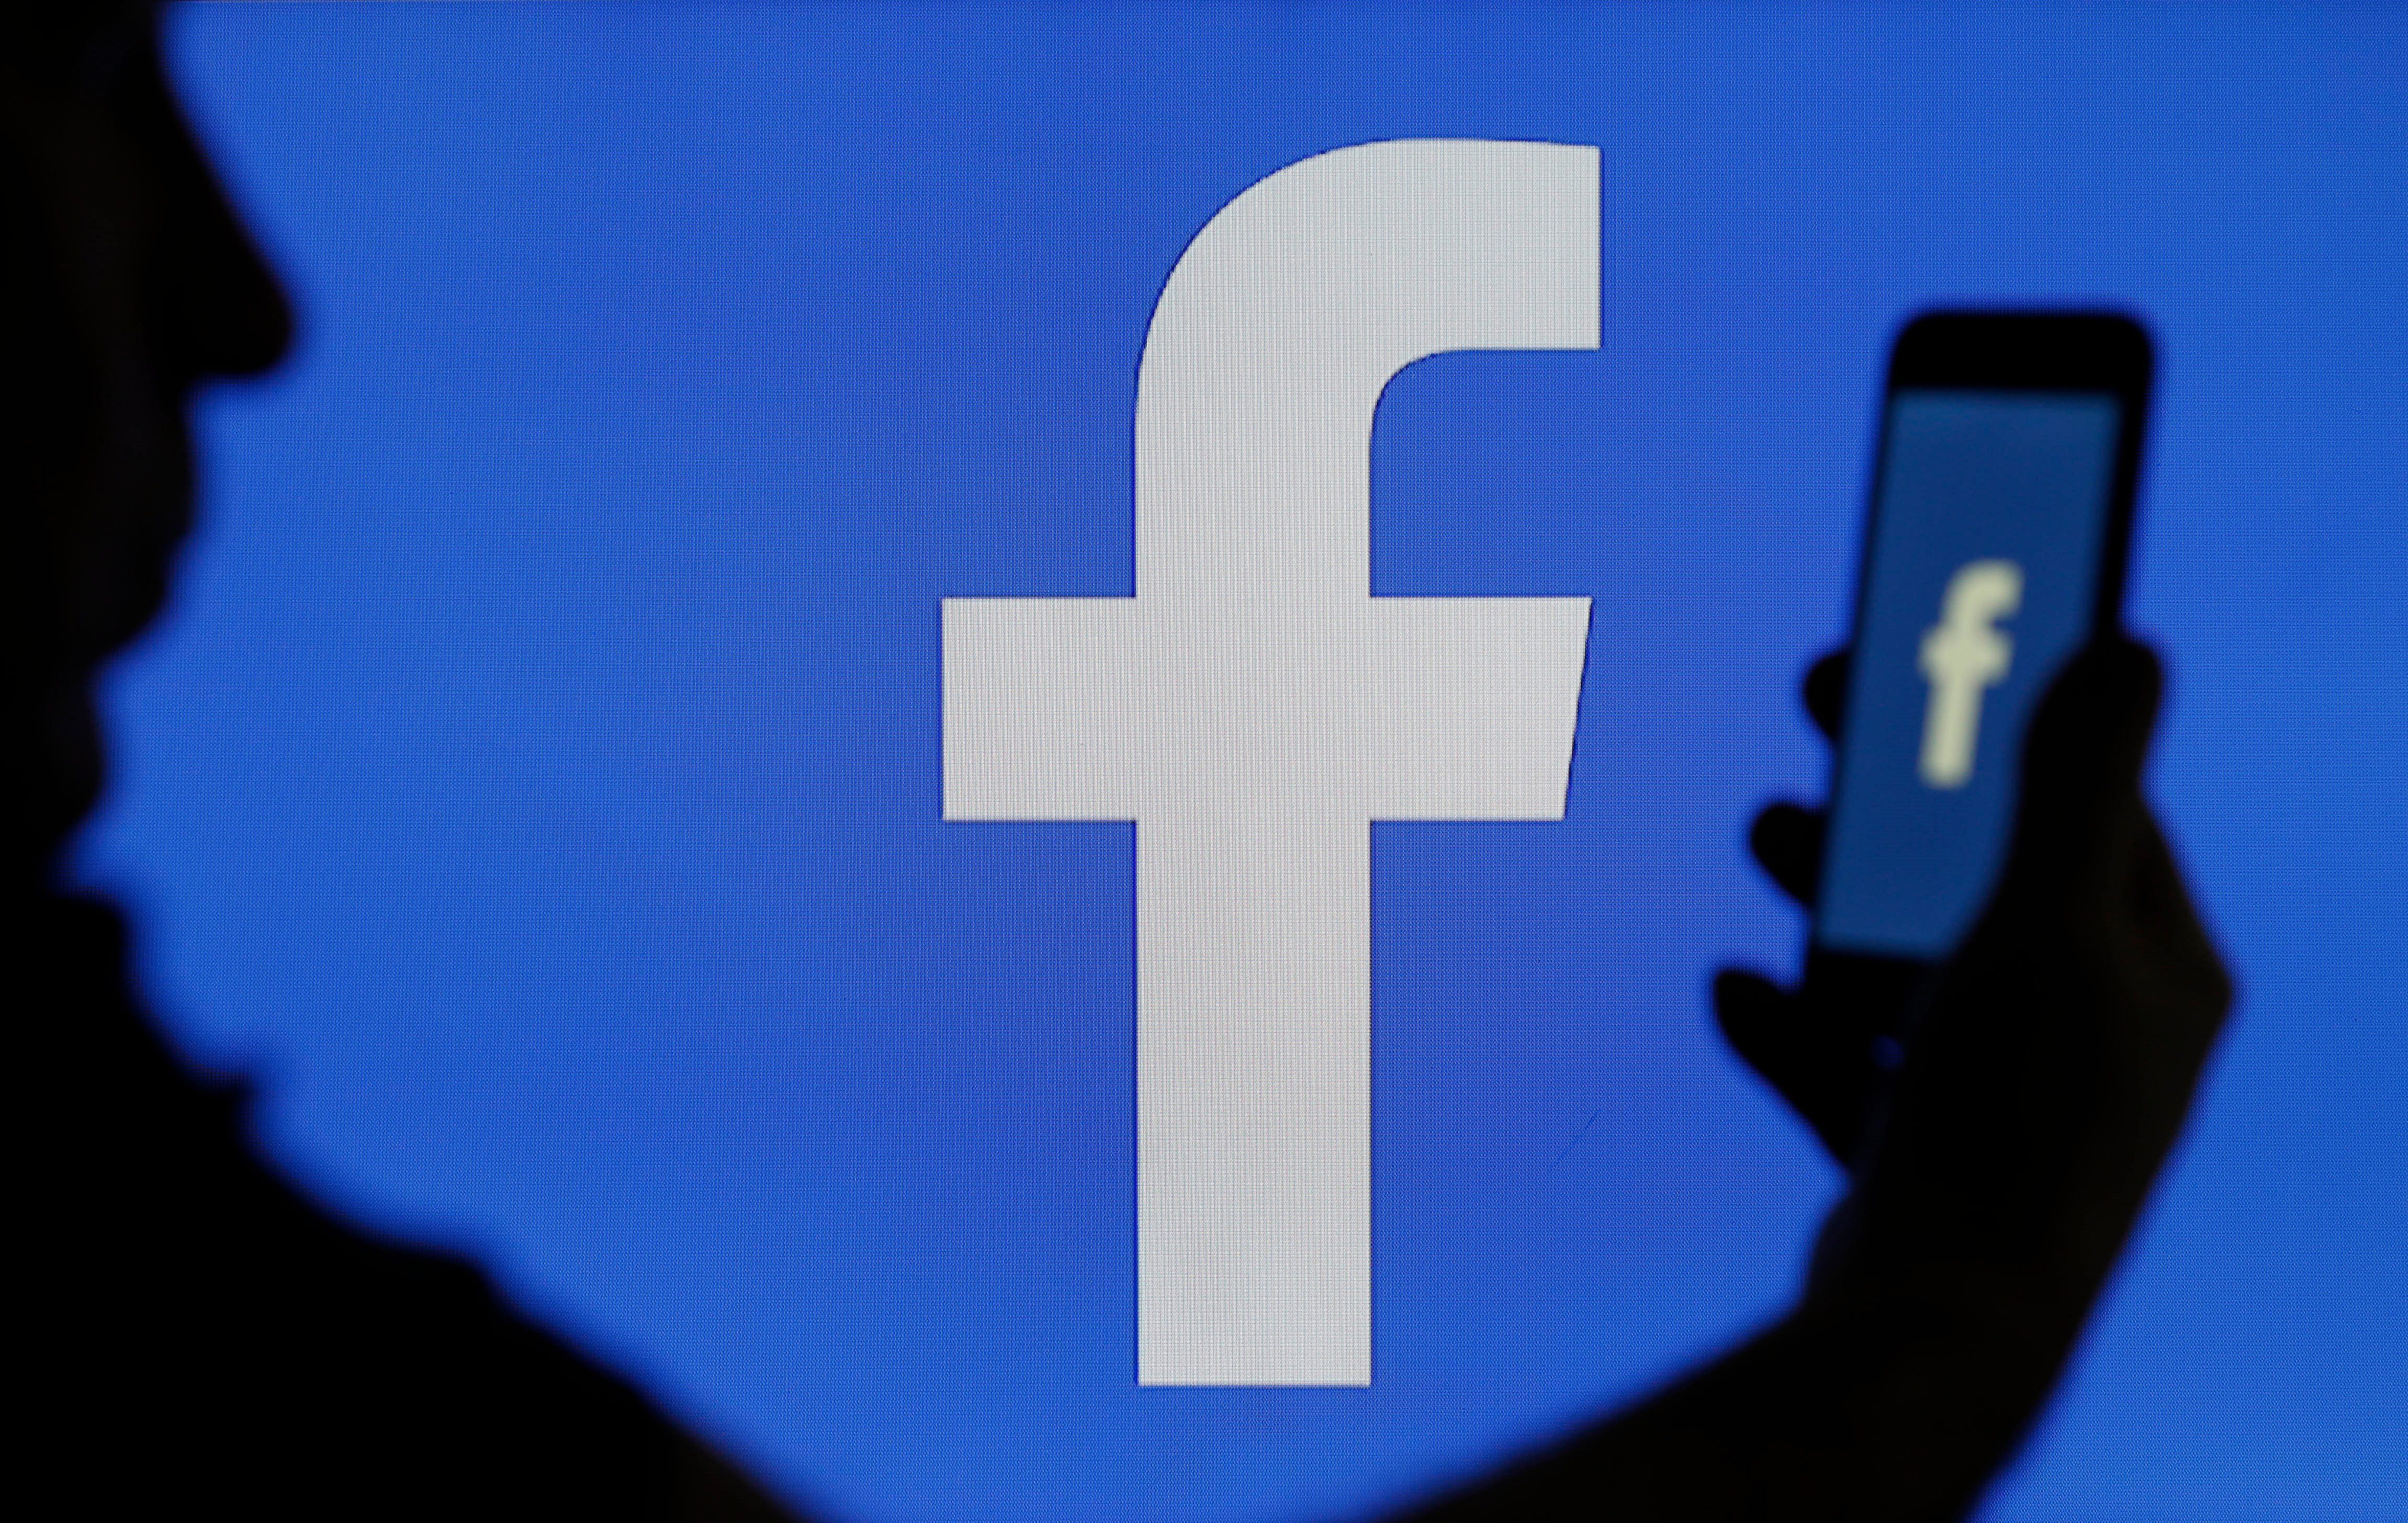  Facebook  لم تعلن رسميا بعد أنها تعمل على أي نوع من تكنولوجيا النظارات الذكية